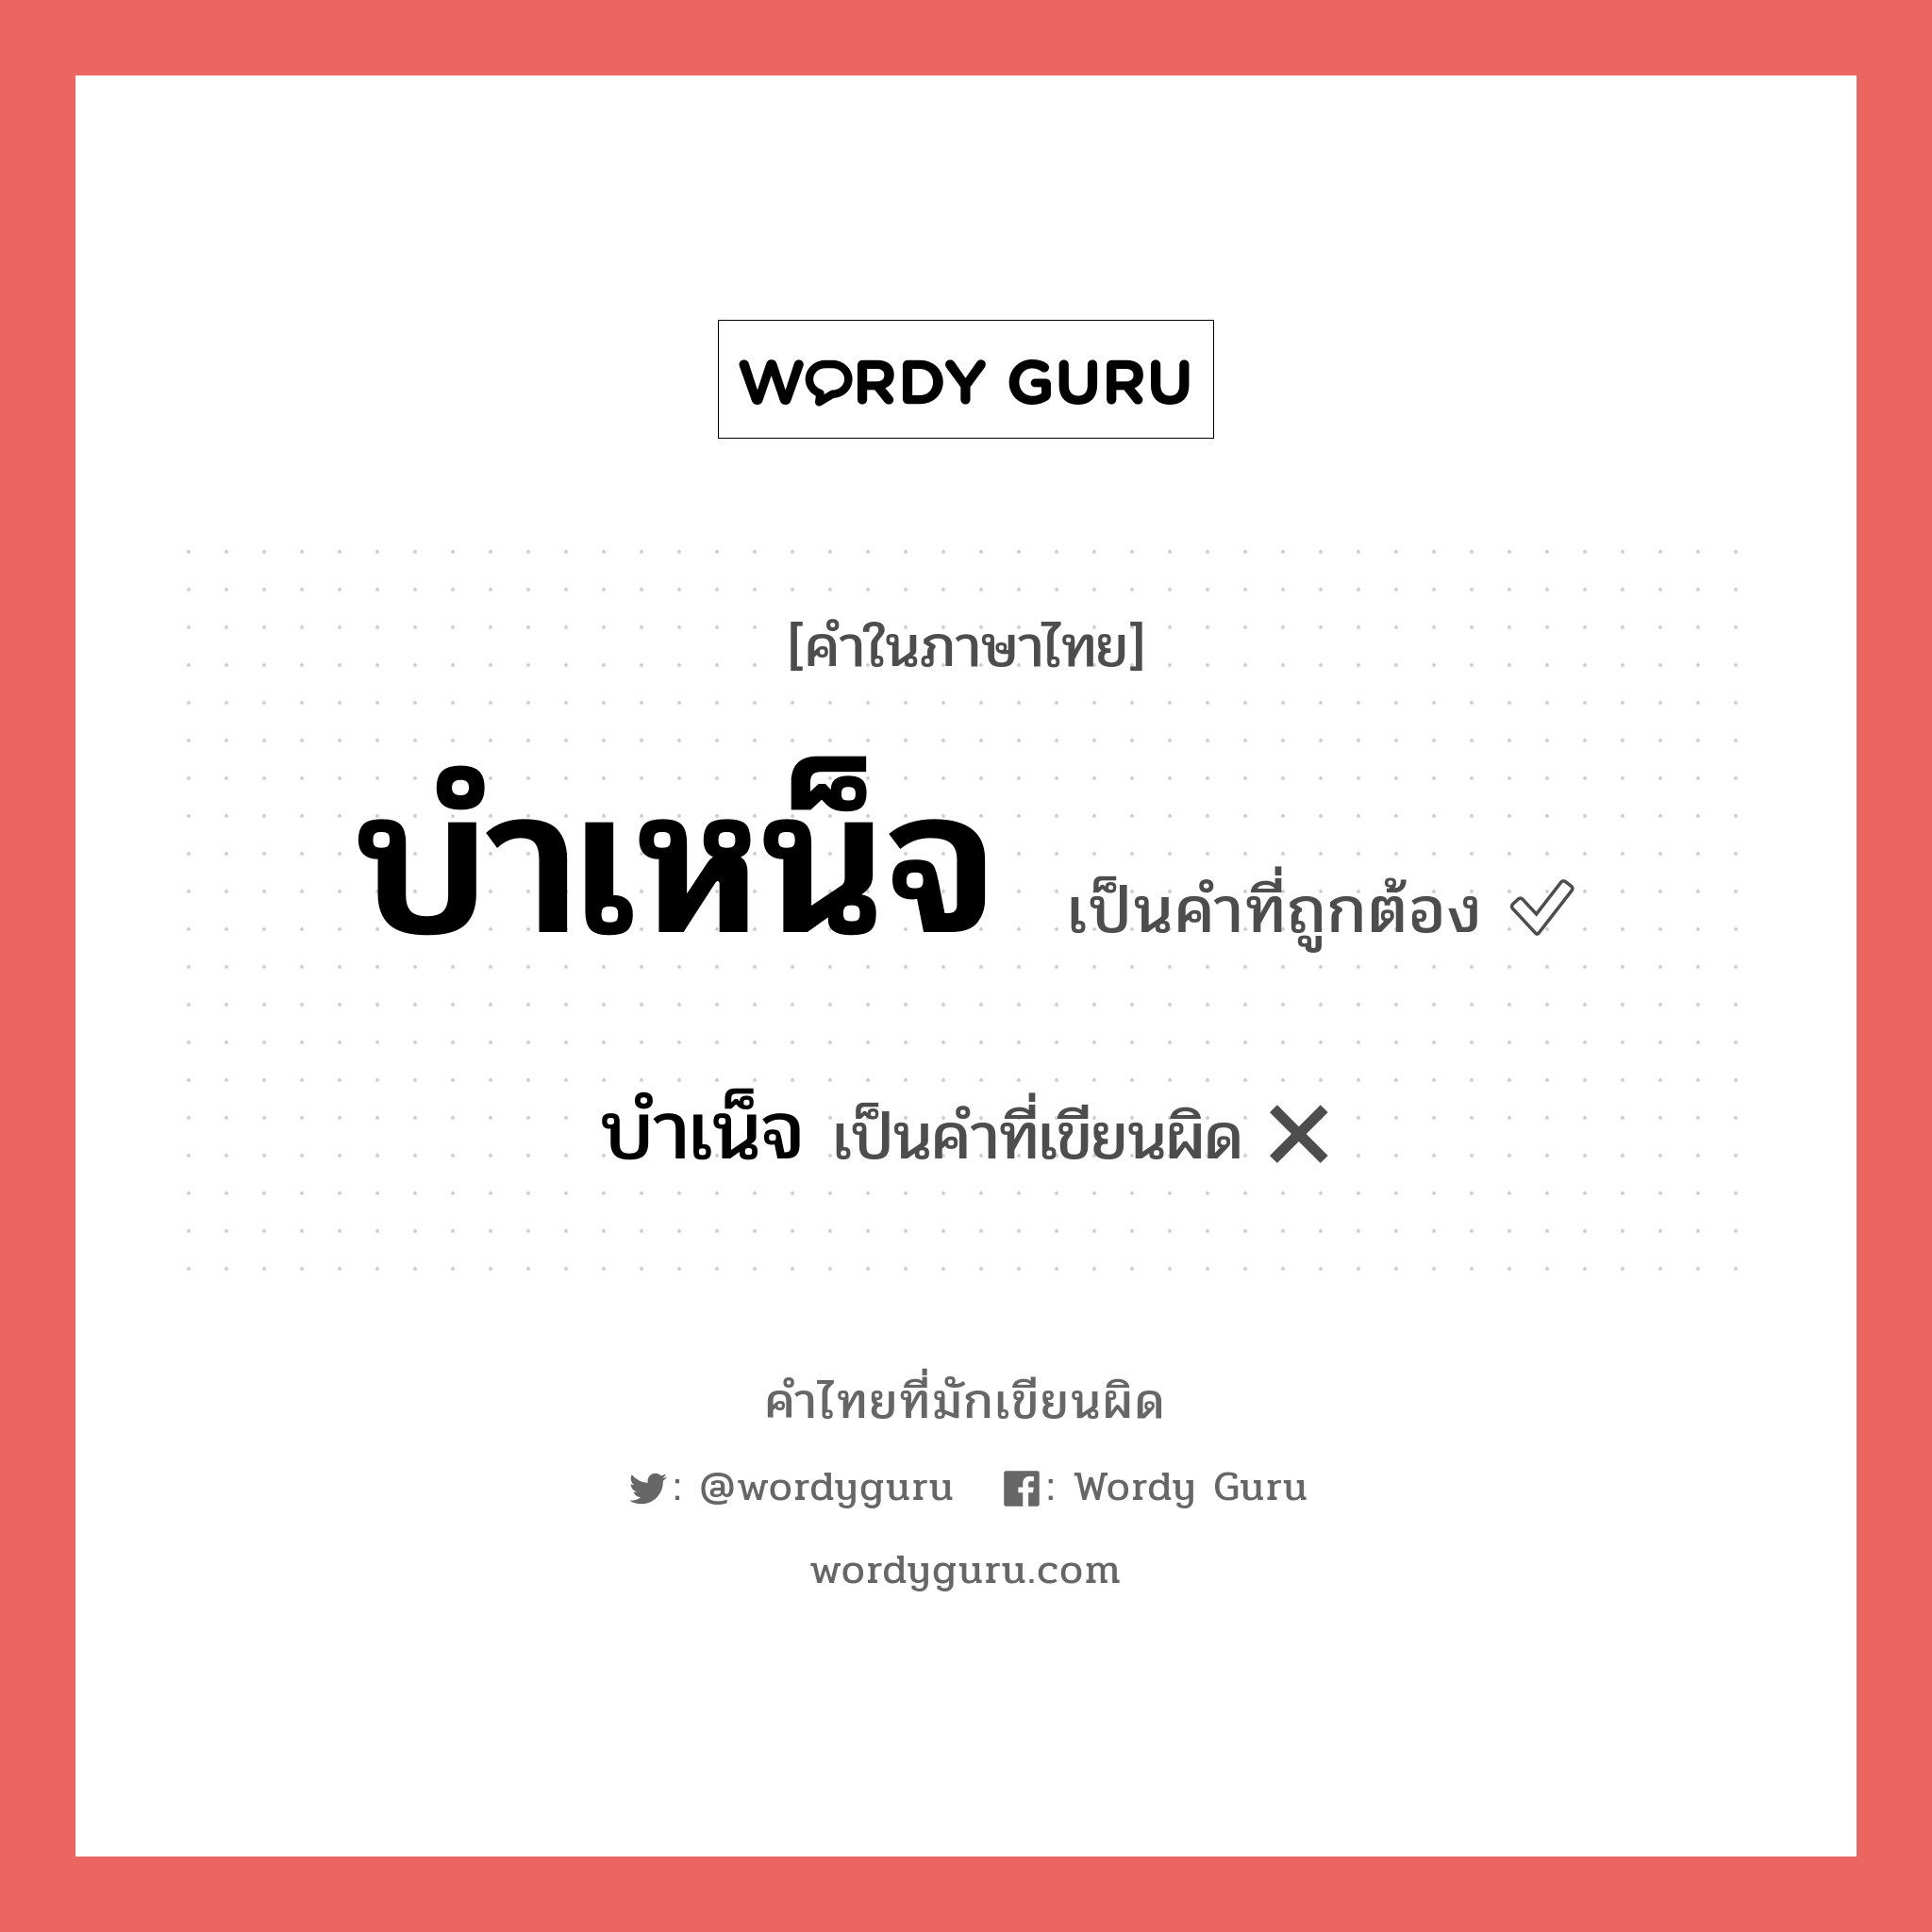 บำเน็จ หรือ บำเหน็จ คำไหนเขียนถูก?, คำในภาษาไทยที่มักเขียนผิด บำเน็จ คำที่ผิด ❌ บำเหน็จ